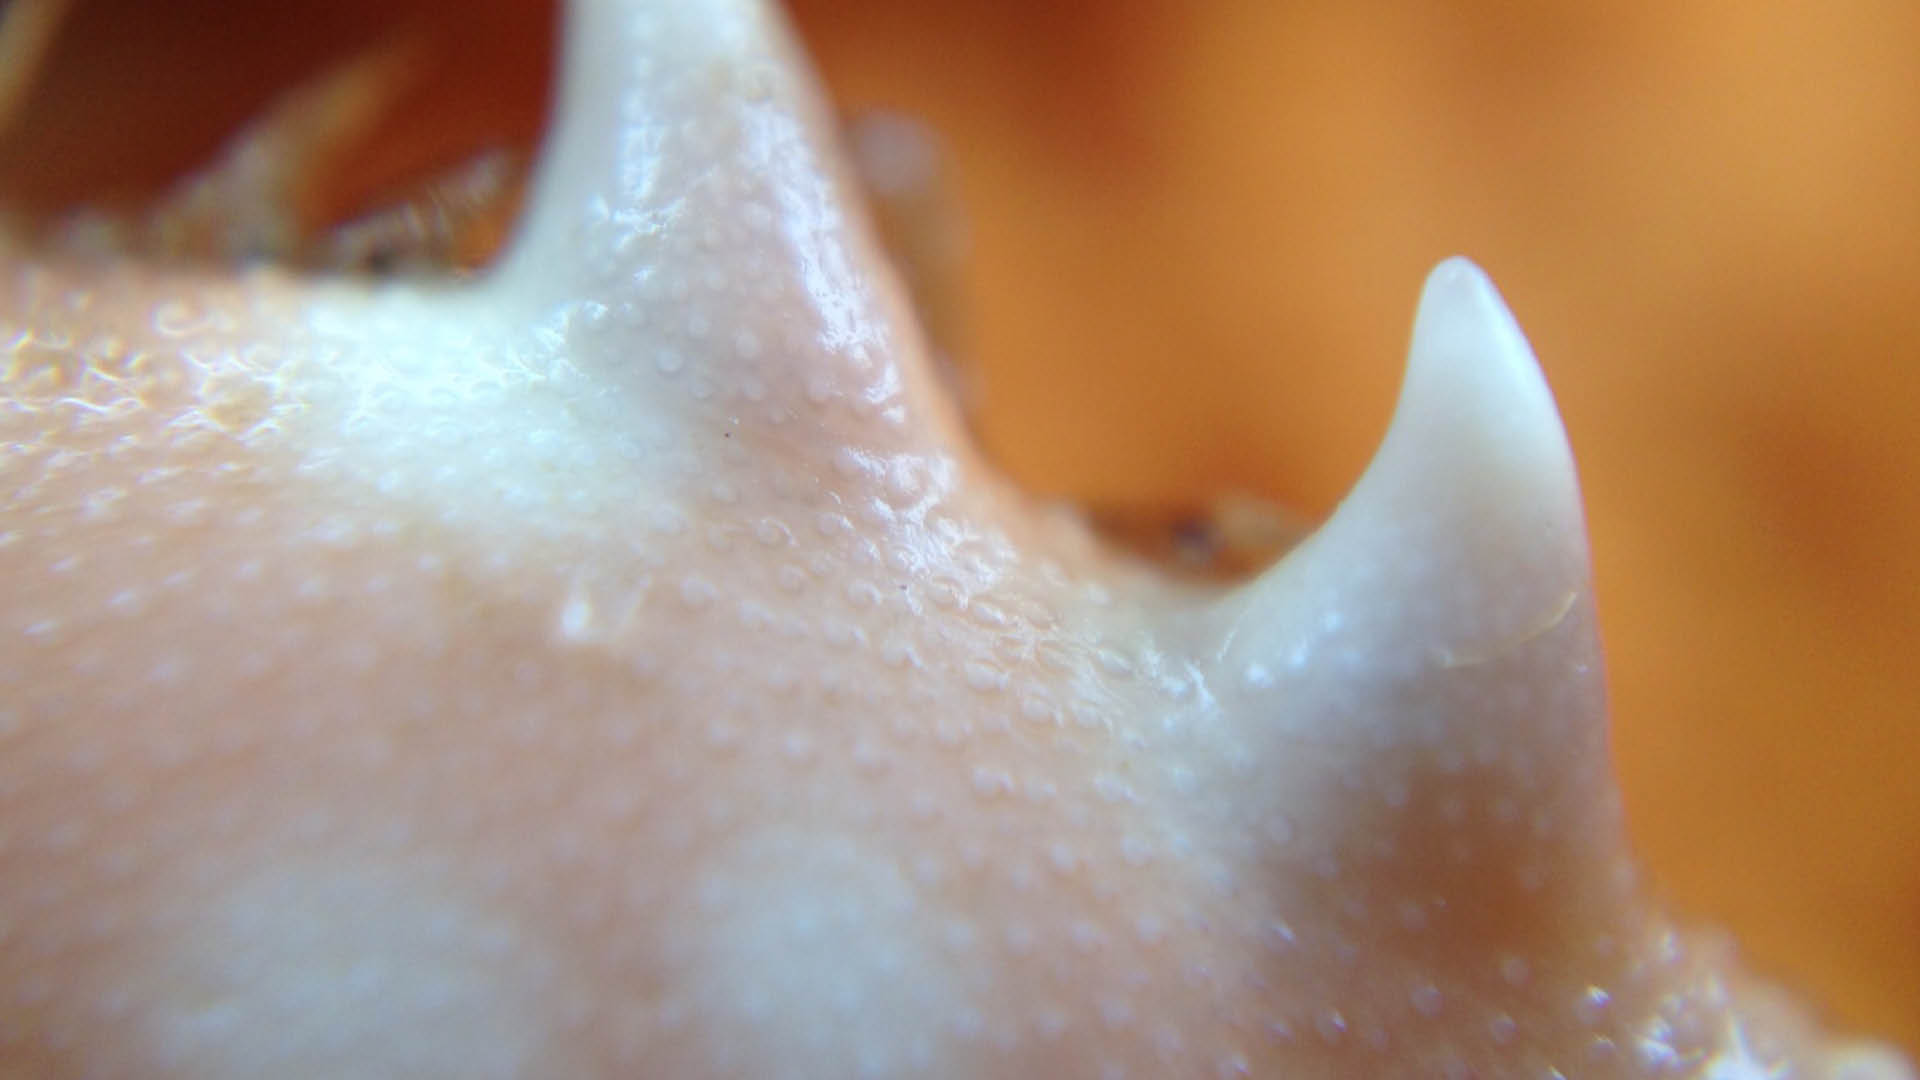 teeth of crab pincers